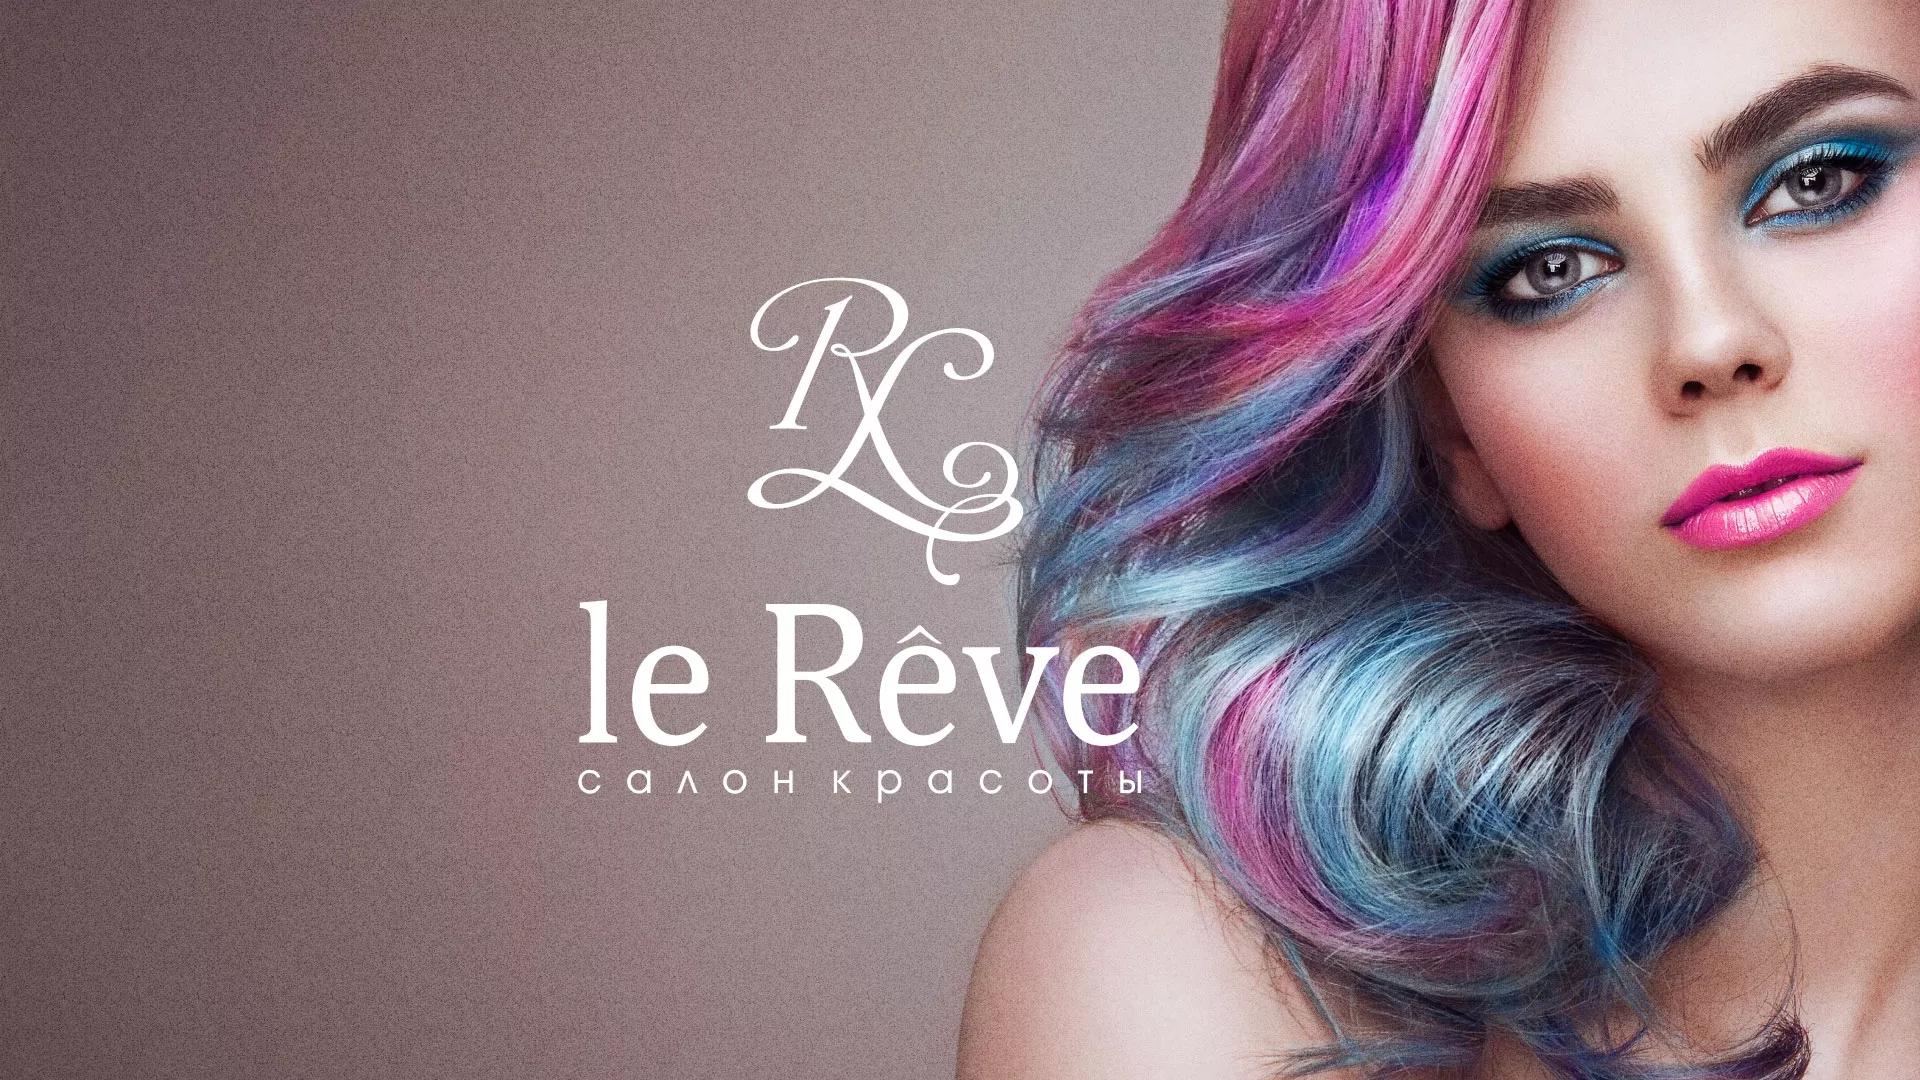 Создание сайта для салона красоты «Le Reve» в Юхнове